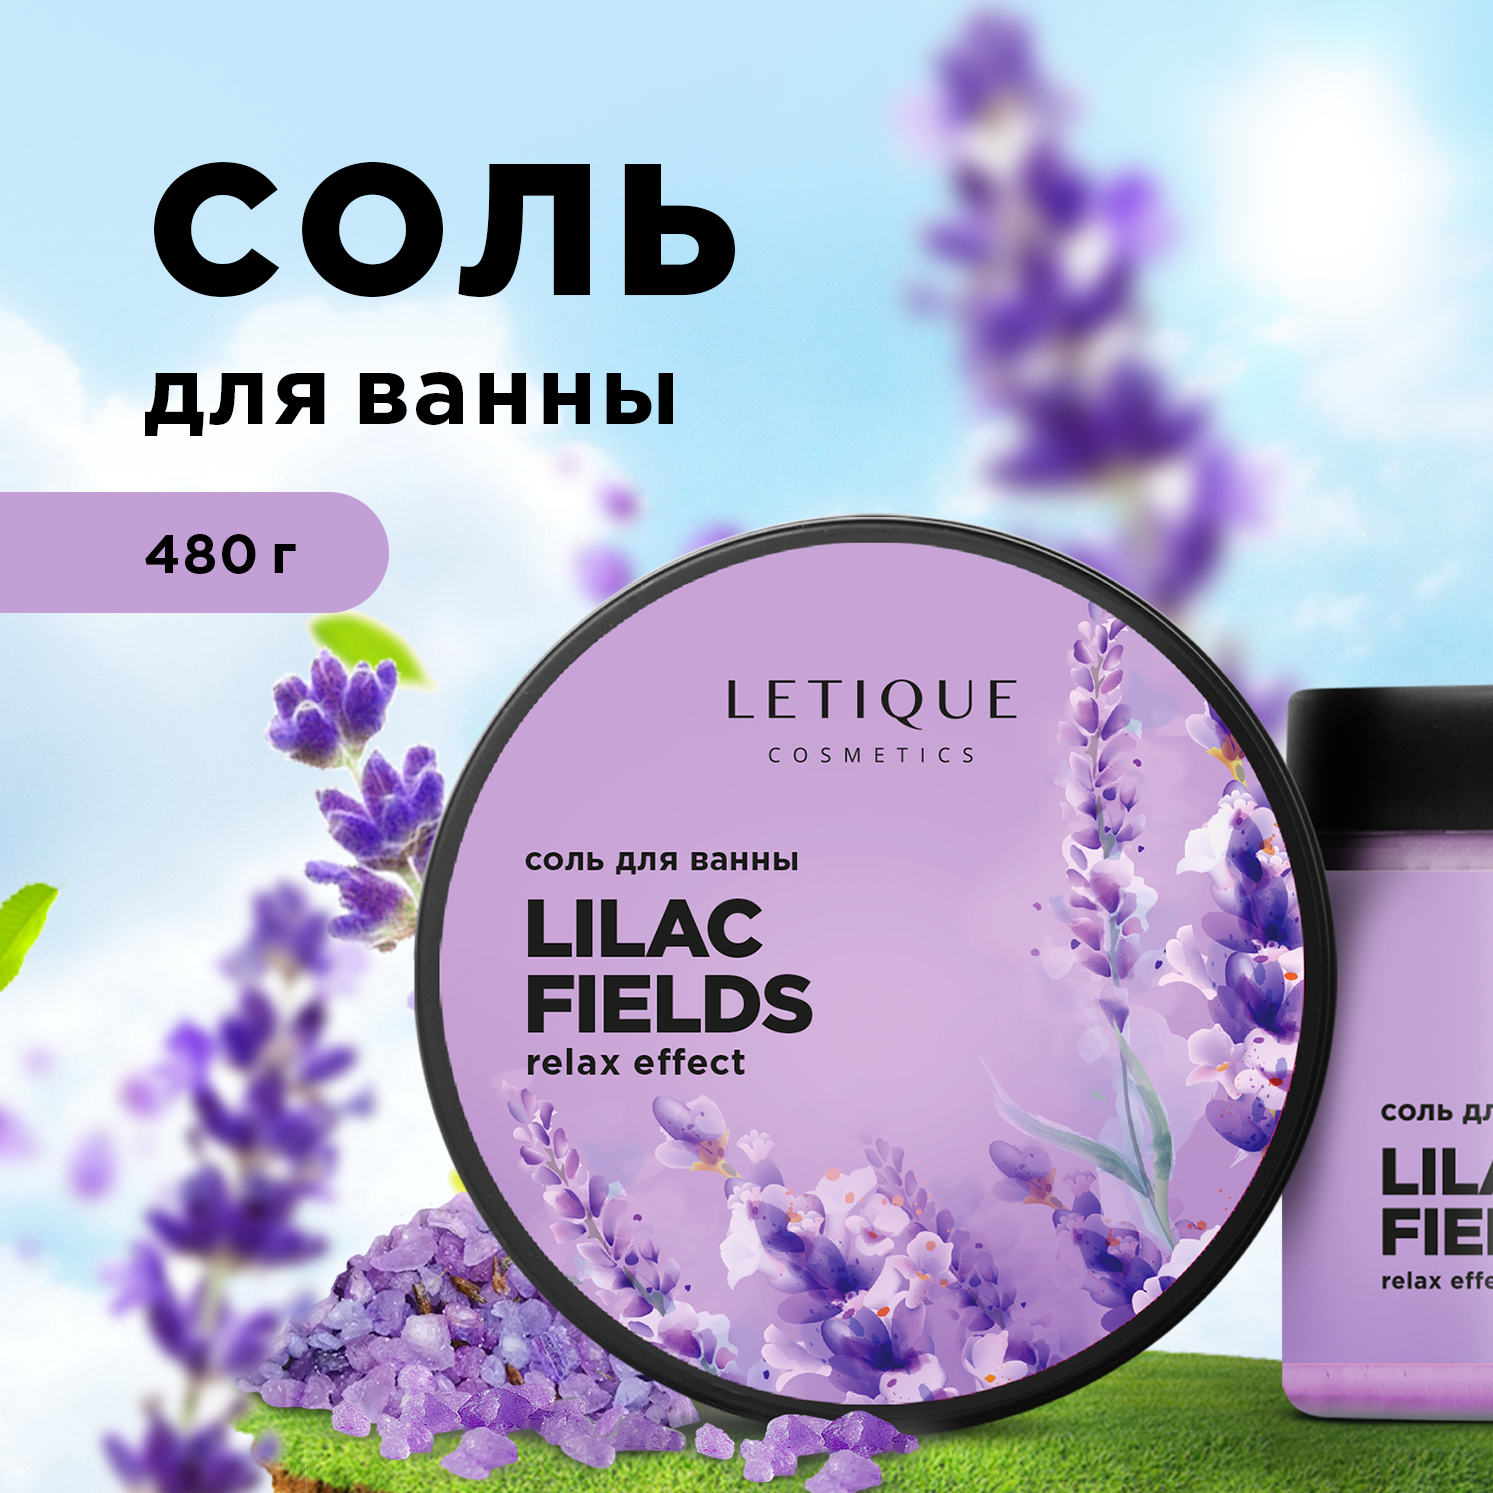 Соль Для Ванны Letique Cosmetics Lilac Fields 480 Г соль для ванны lilac fields letique cosmetics